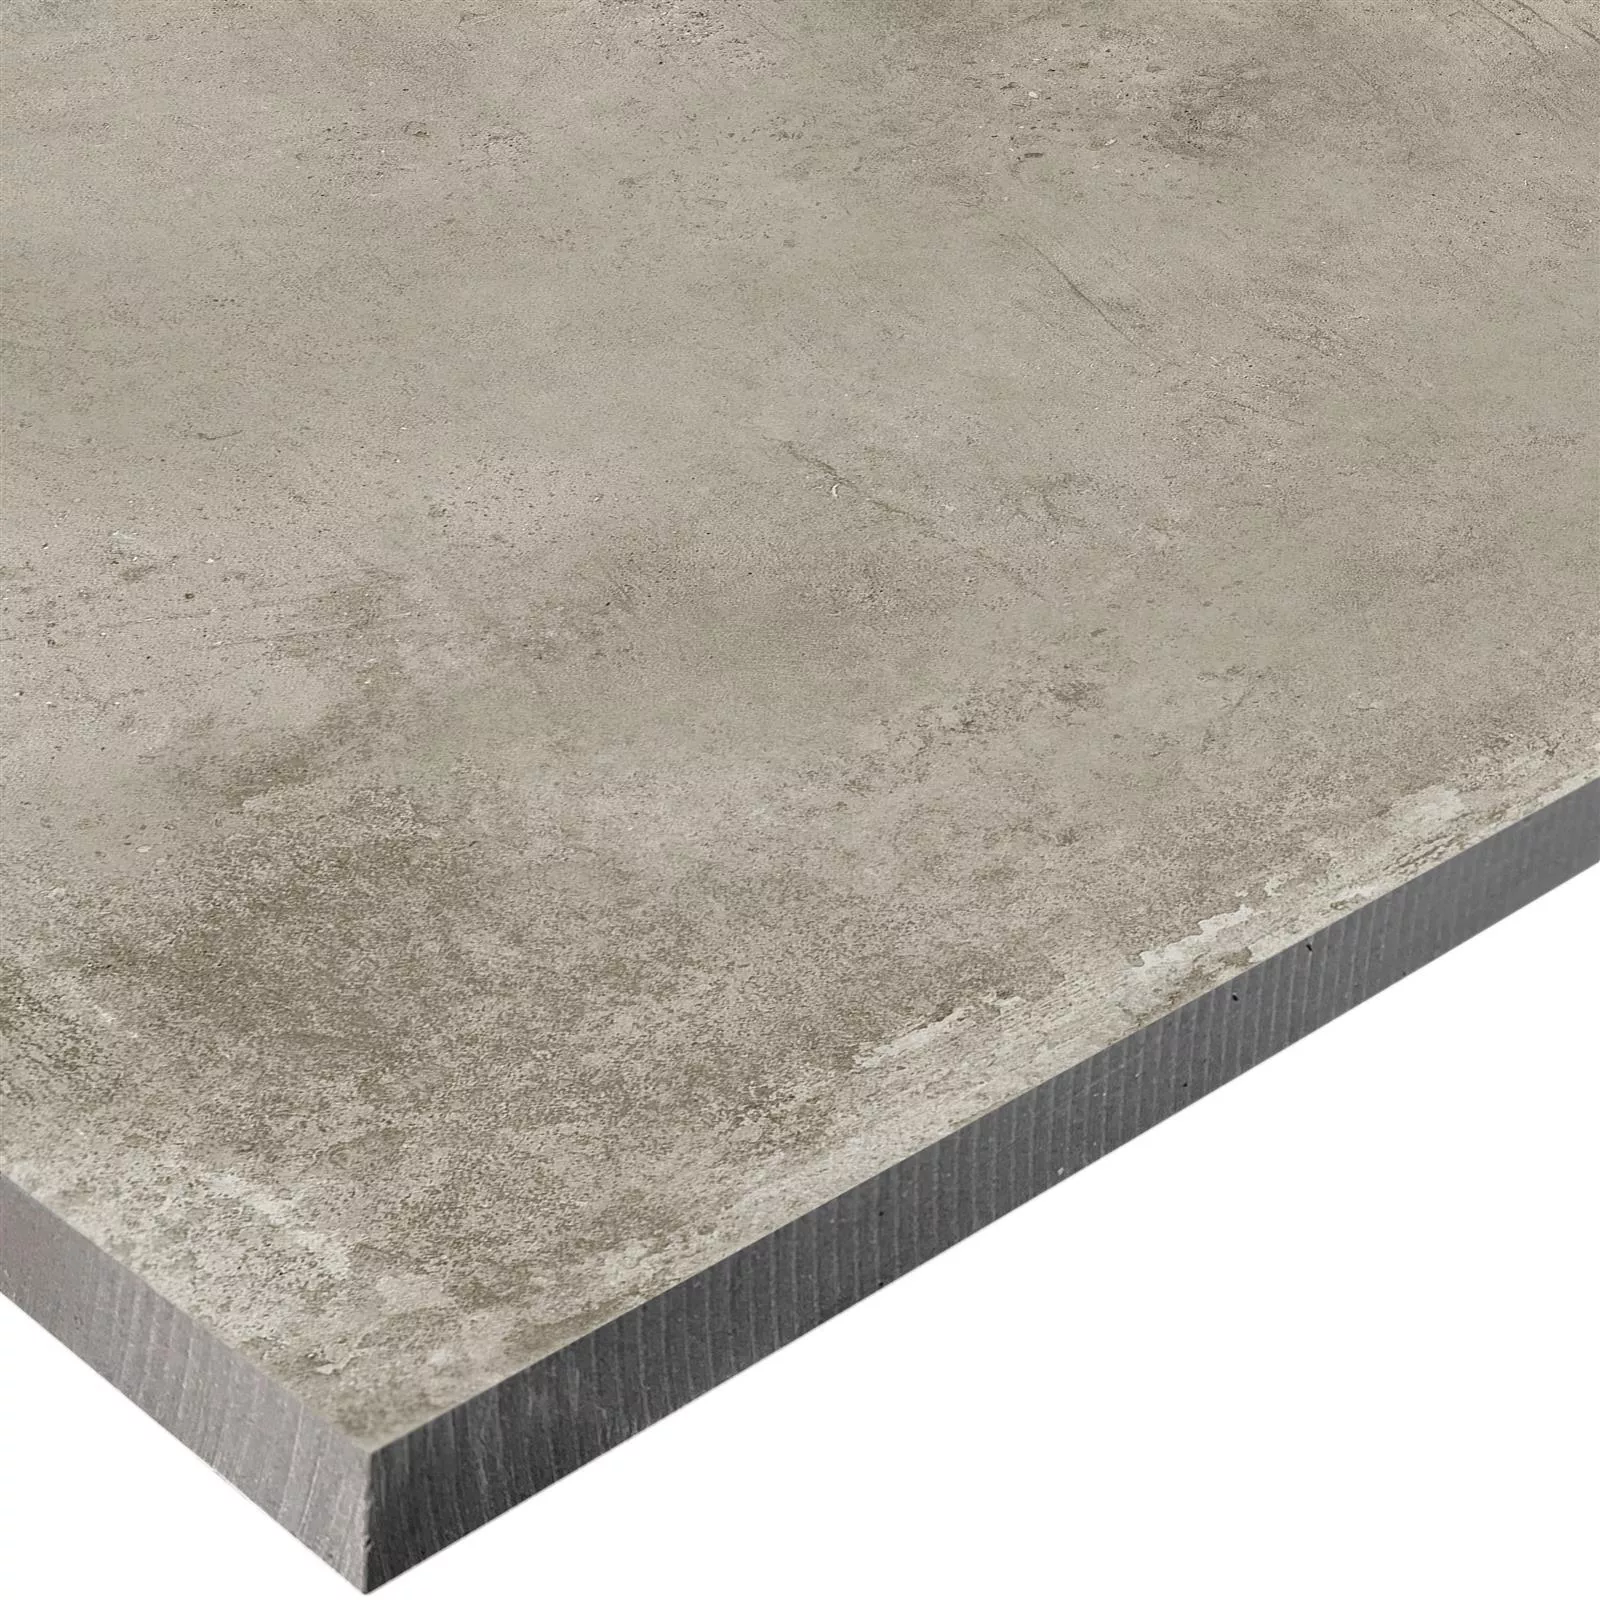 Sample Terrace Tiles Cement Optic Berlin Beige 60x120cm